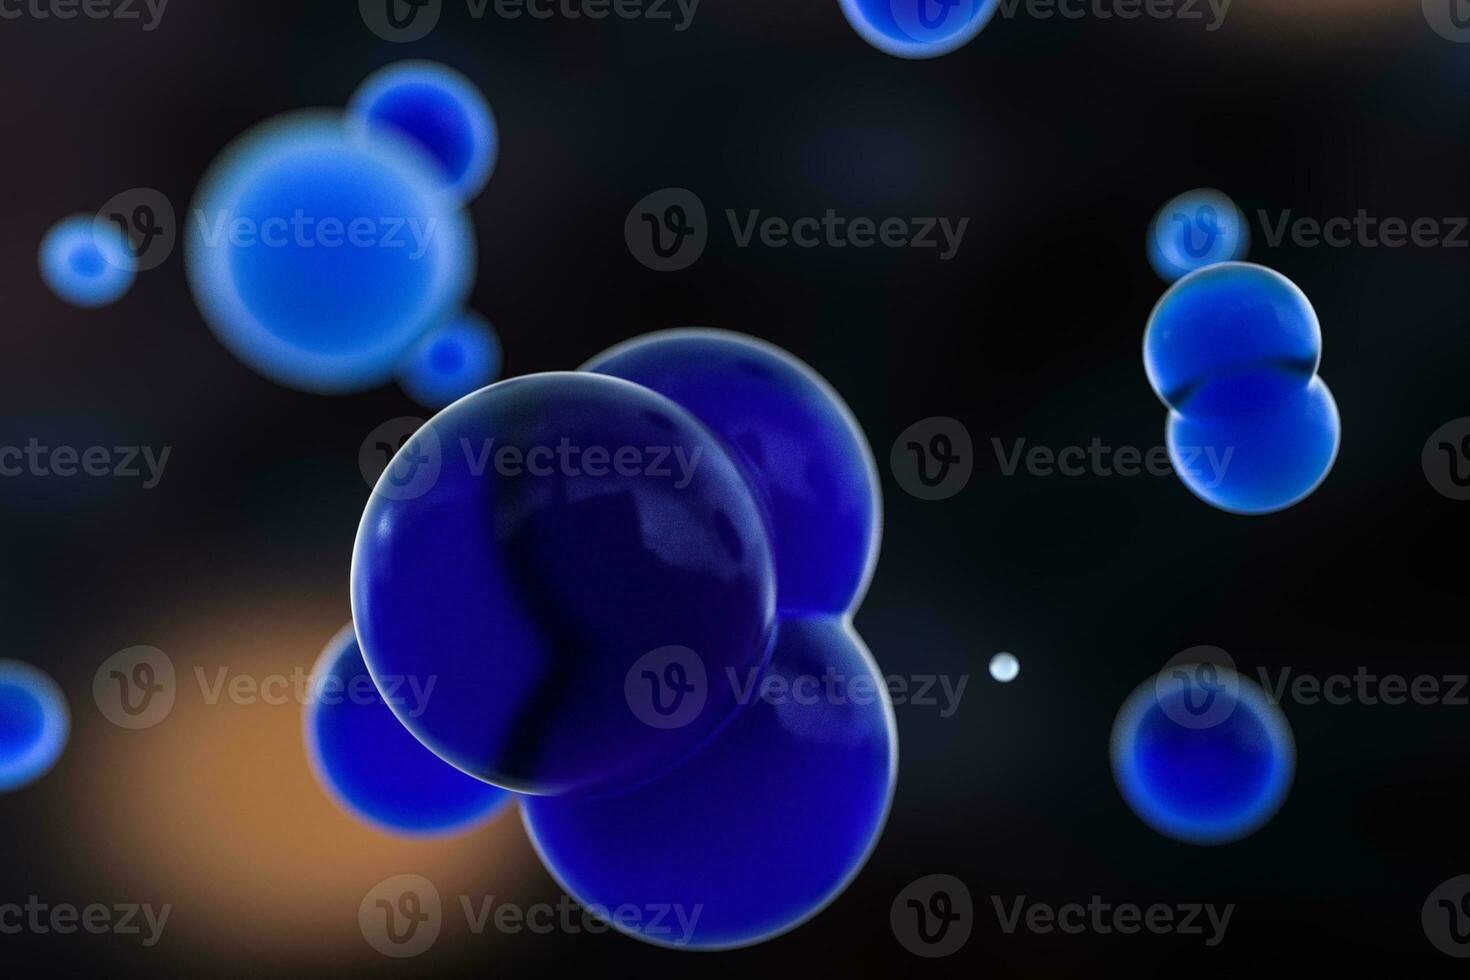 azul esferas y molecular modelo, aleatorio repartido, 3d representación. foto